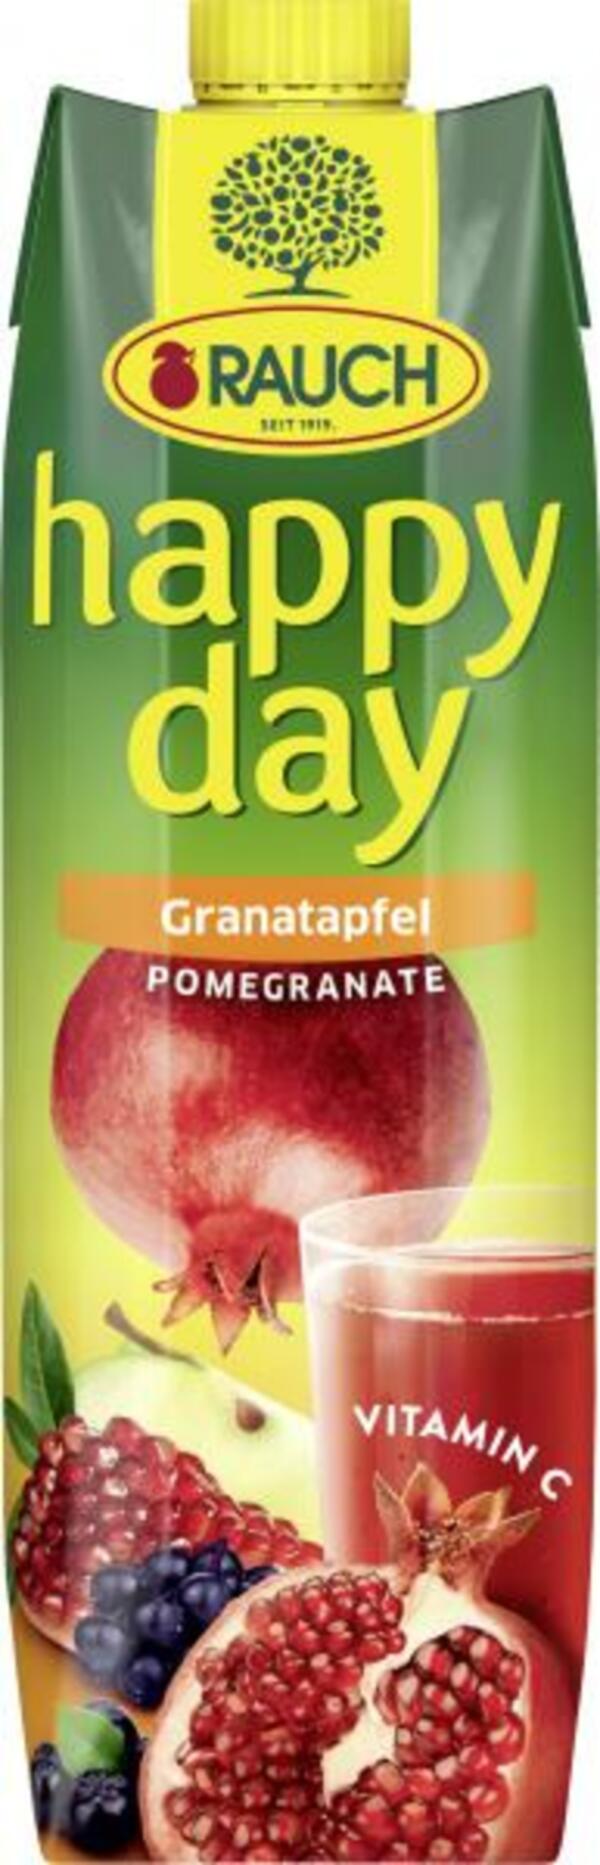 Bild 1 von Rauch Happy Day Granatapfel